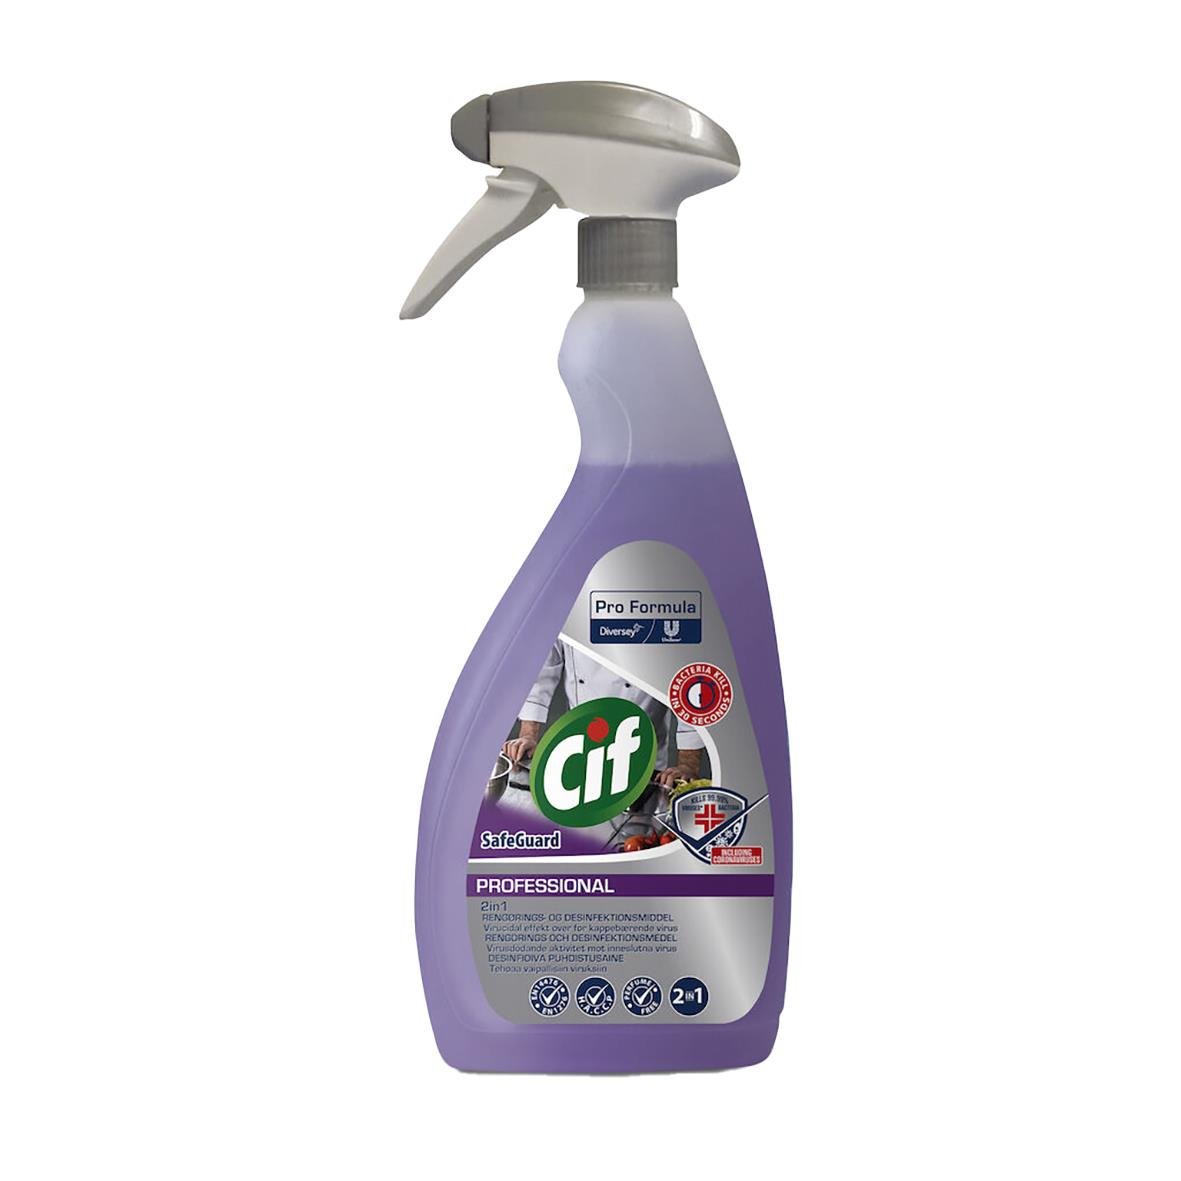 Köksrent Cif Pro Formula 2in1 Disinfectant 750ml